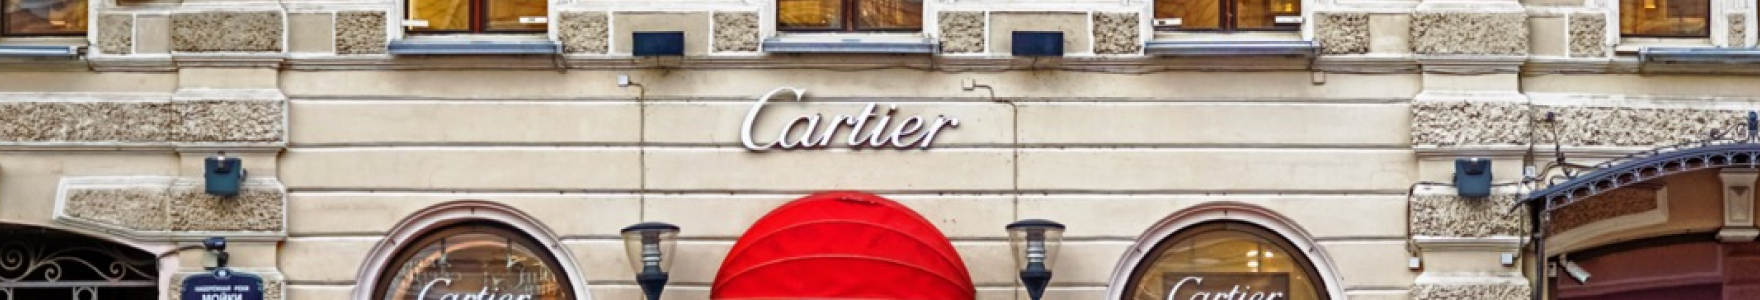 Cartier 背景